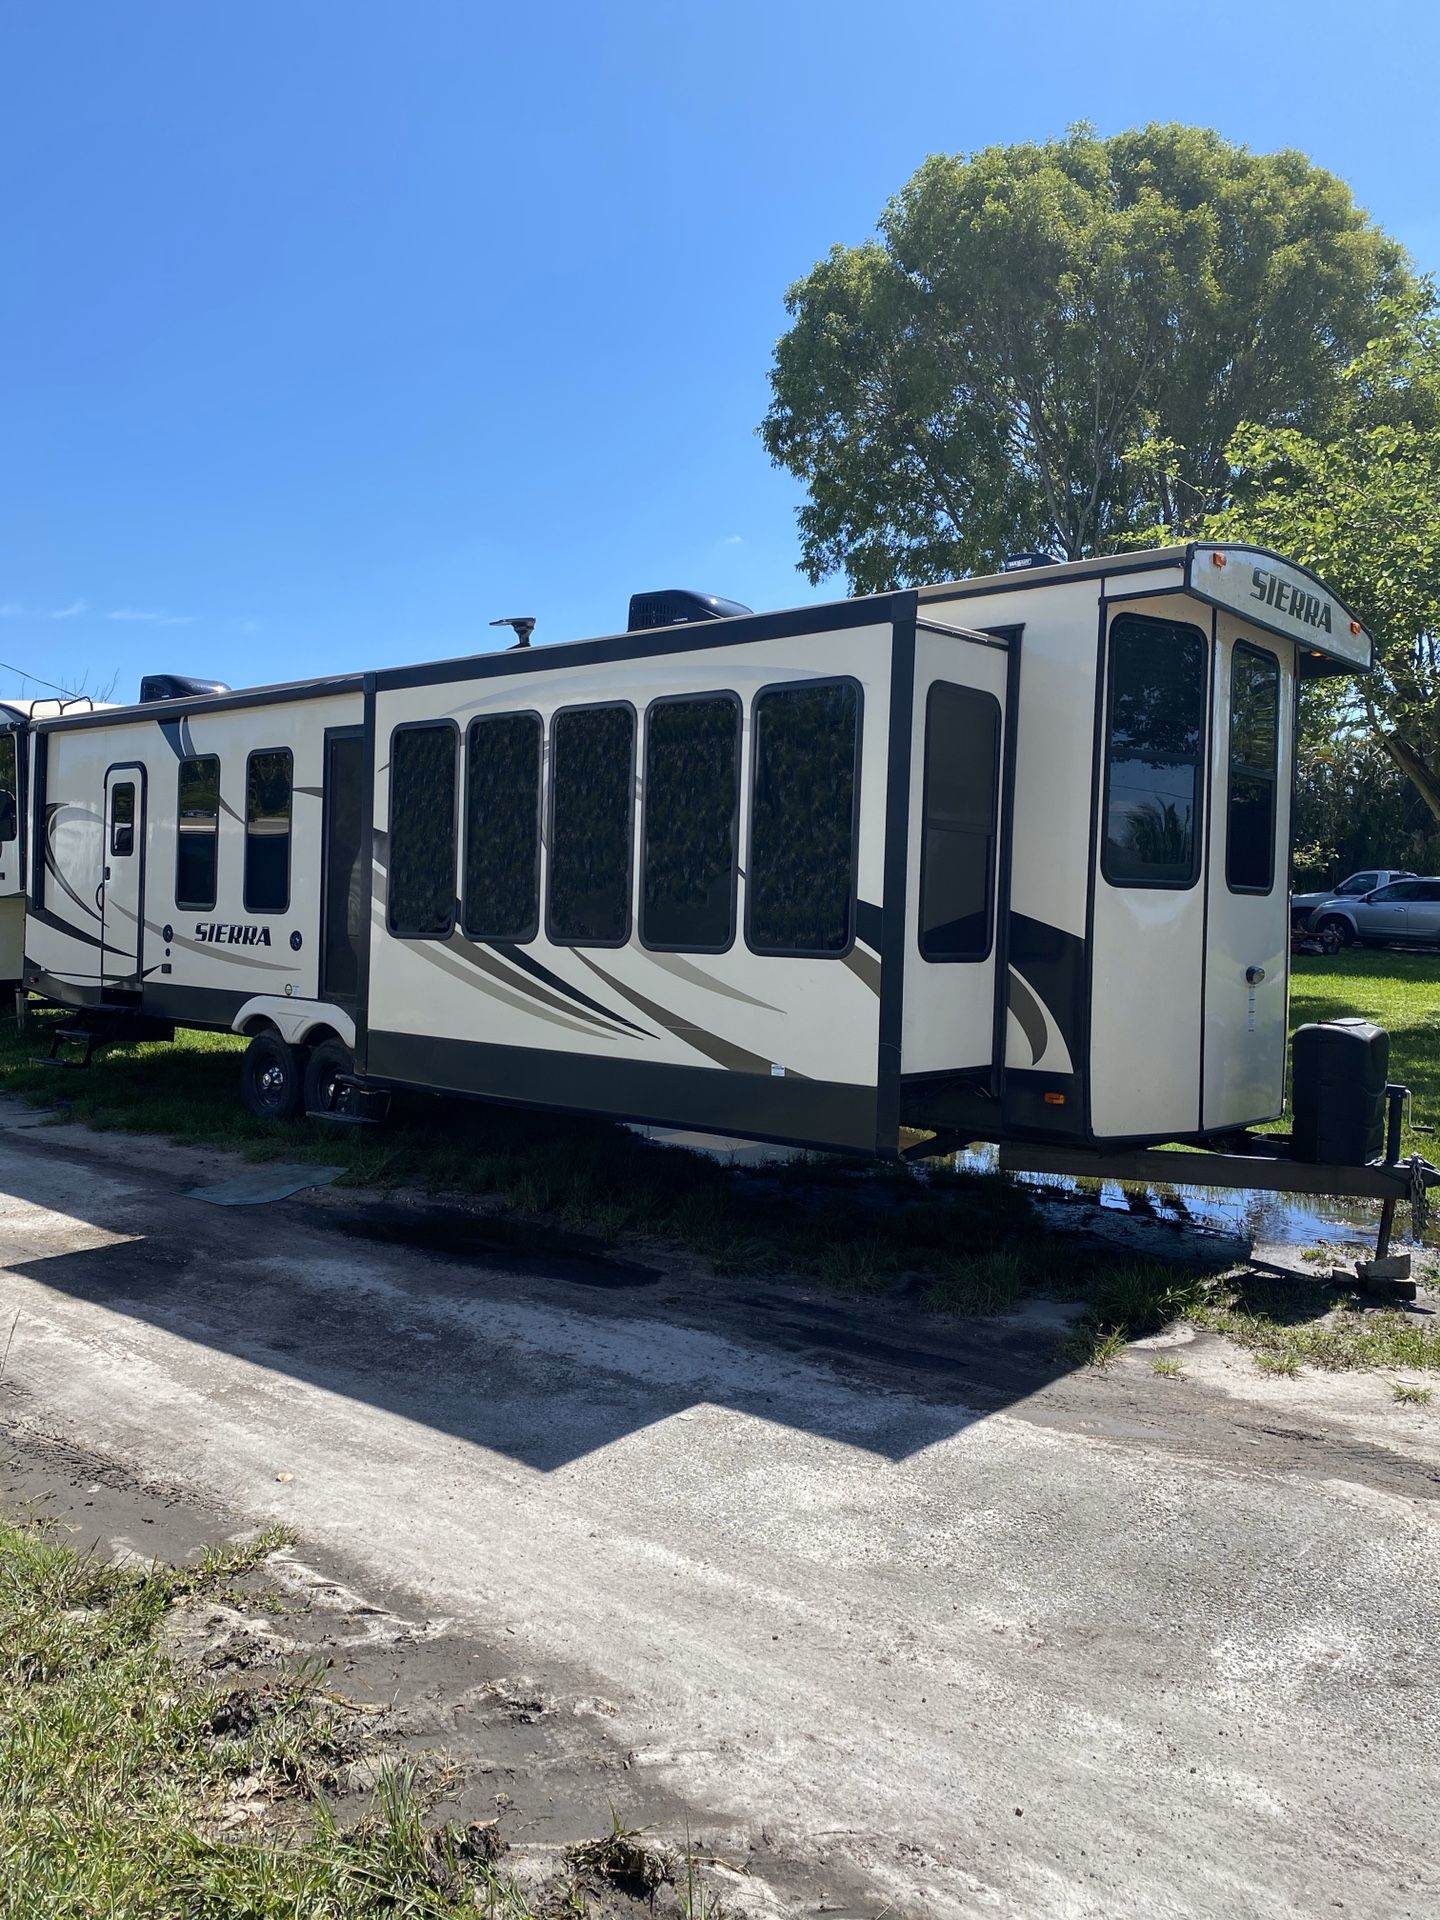 2018 forest River Sierra Park model travel trailer Rv home